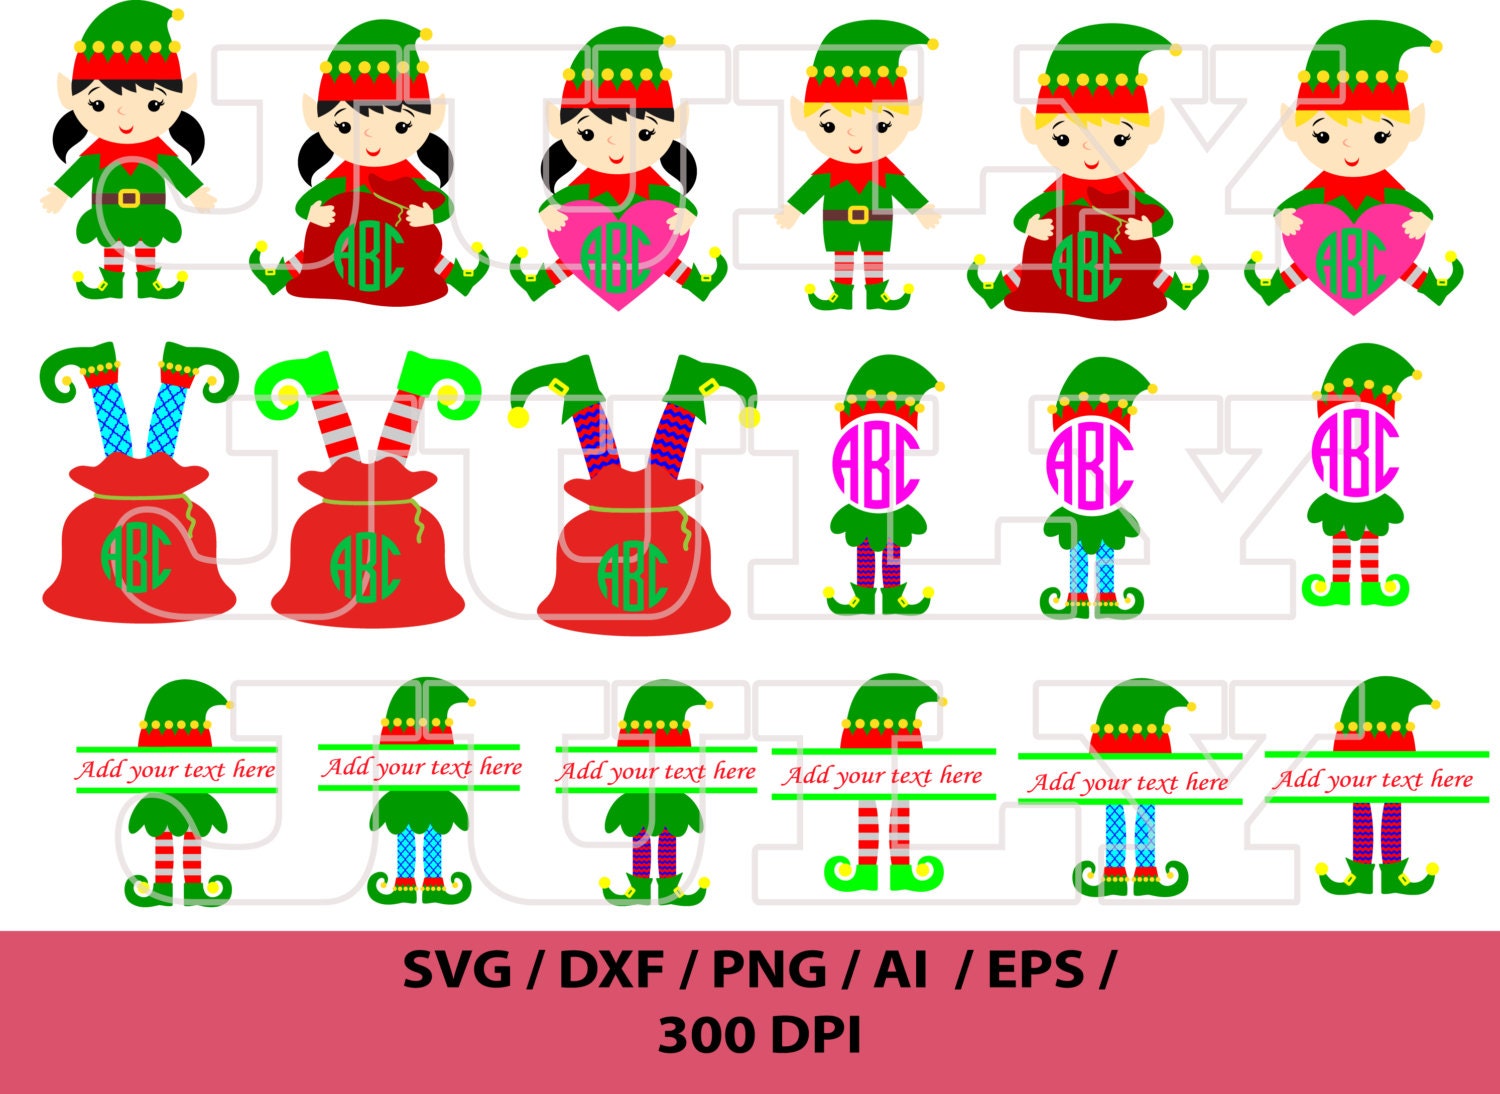 Download Elf SVG Elf Monogram SVG Elf Clipart Christmas Elves svg